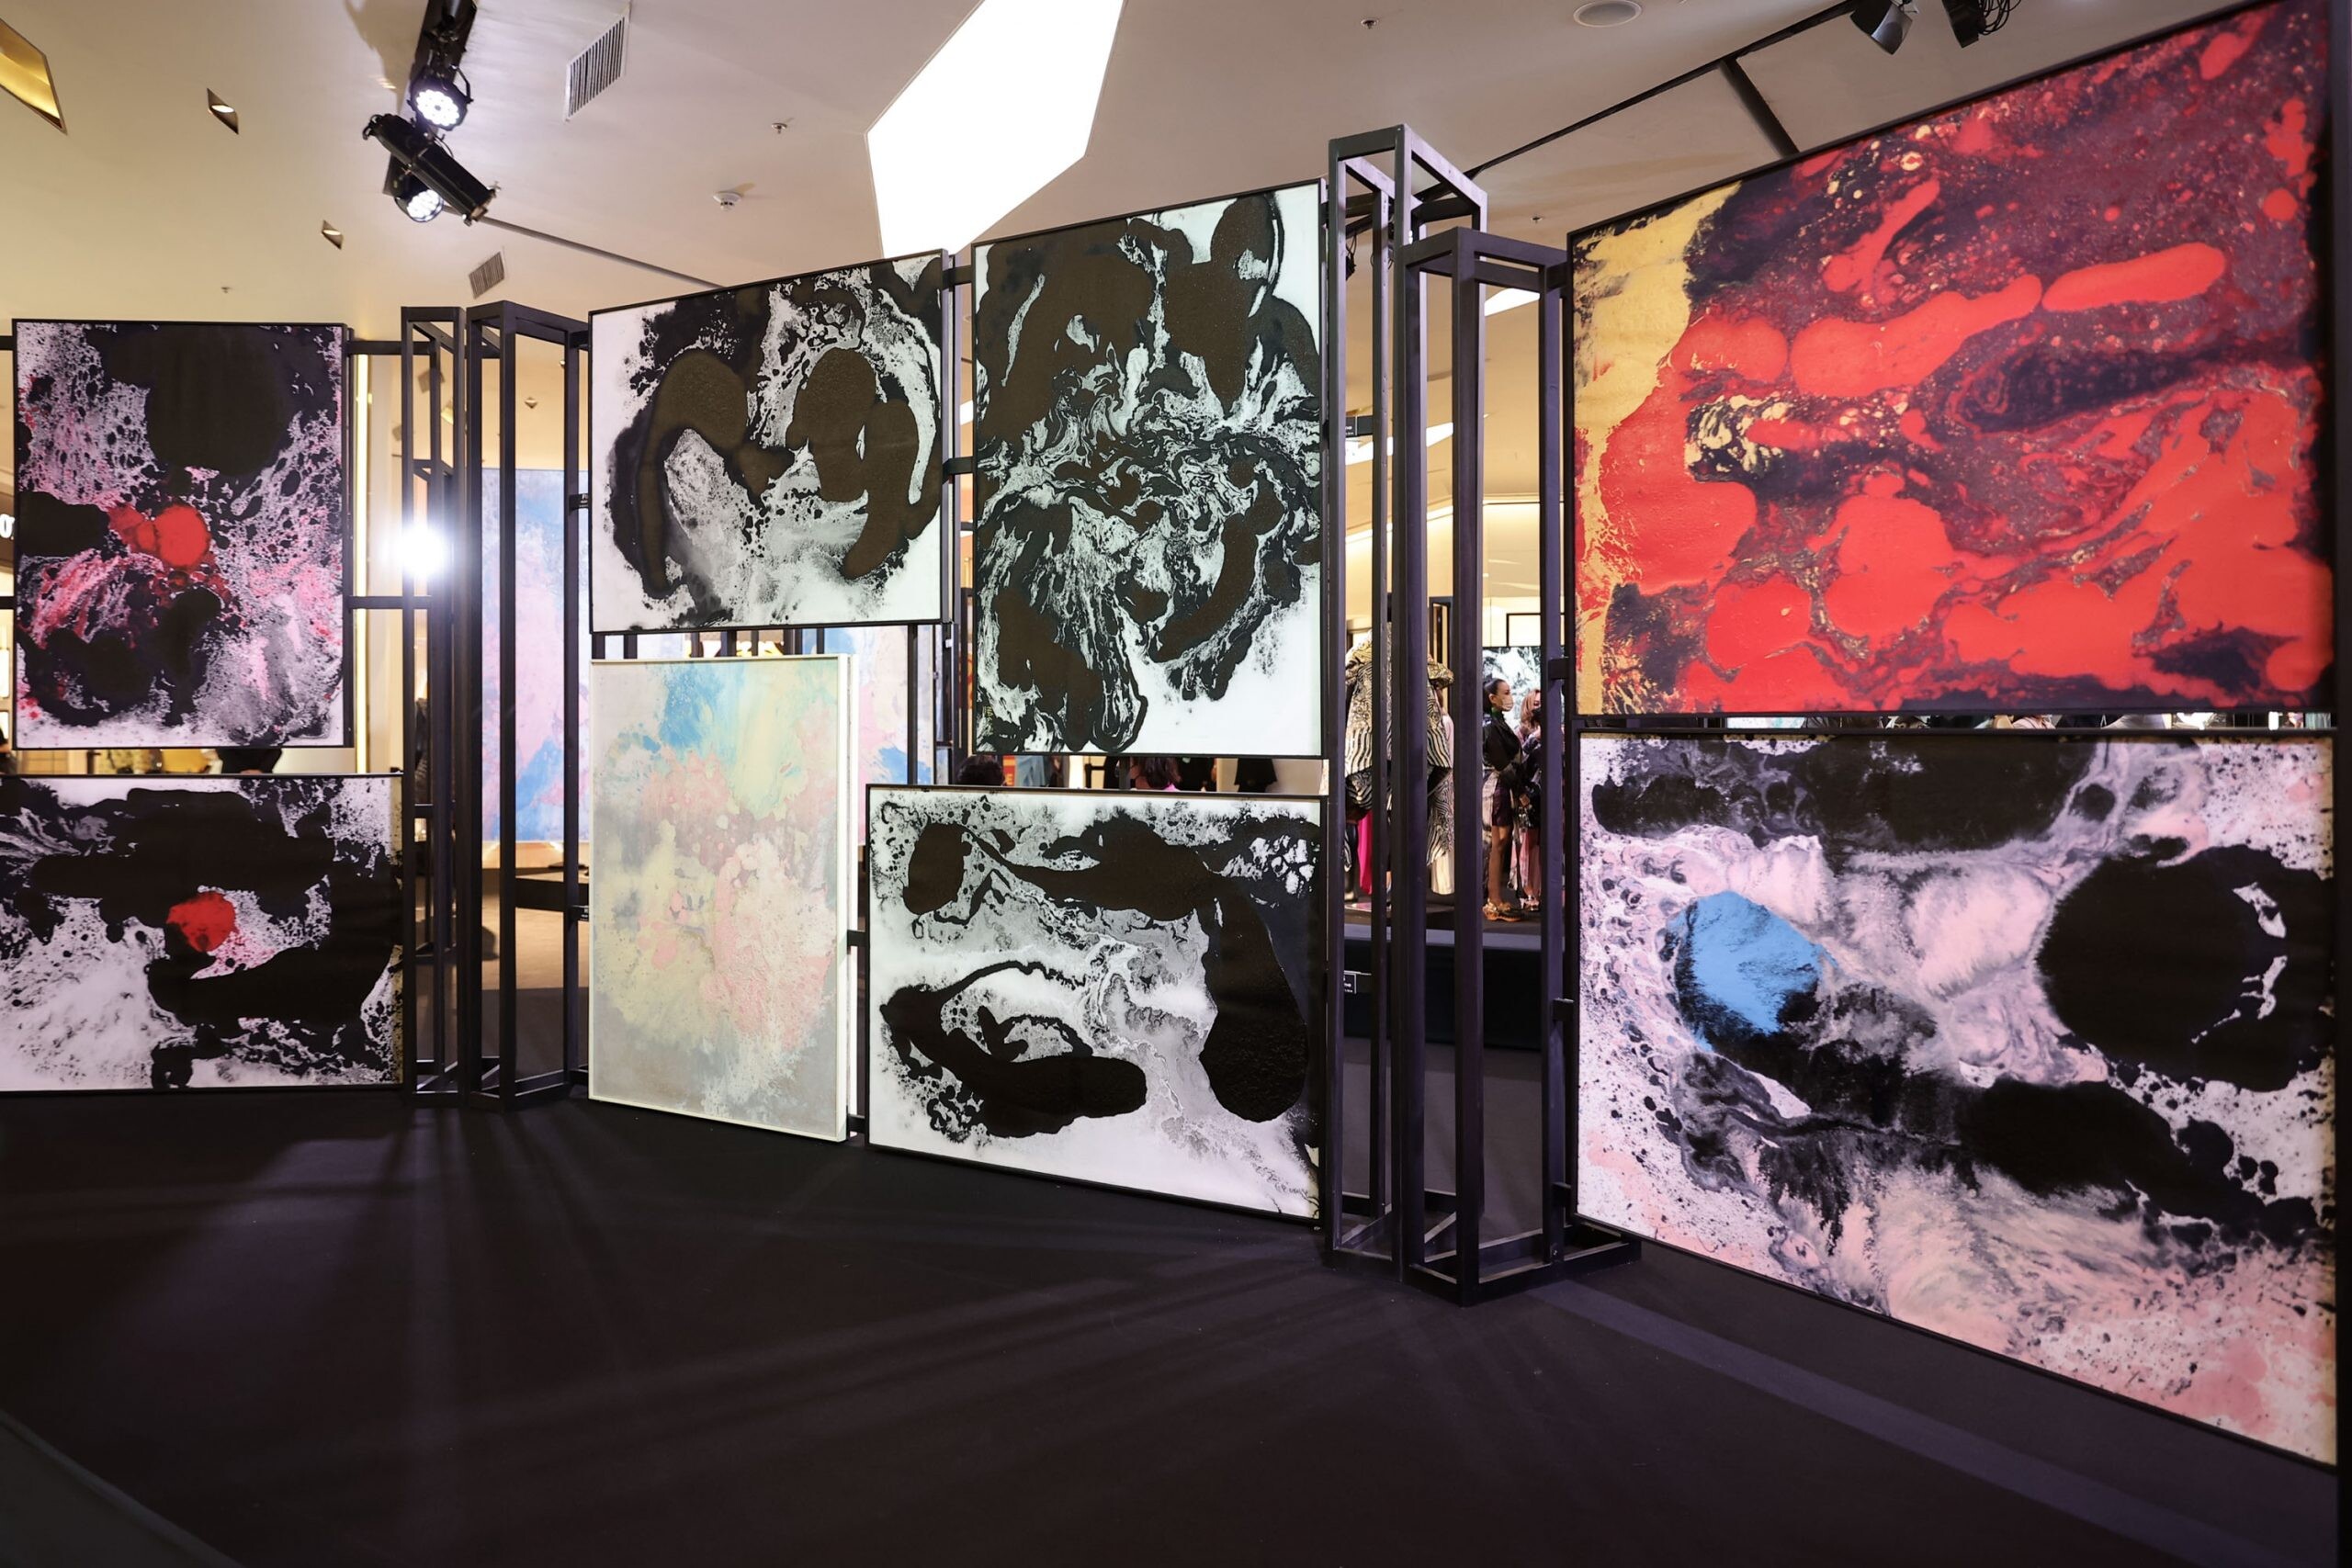 สัมผัสศิลปะแอ็บสแต็รก ในแบบฉบับ NAGARA แฟชั่นดีไซเนอร์ไทยระดับตำนาน ในนิทรรศการ NAGARA Painting Exhibition 2021 6-12 ธันวาคม นี้ ที่สยามพารากอน